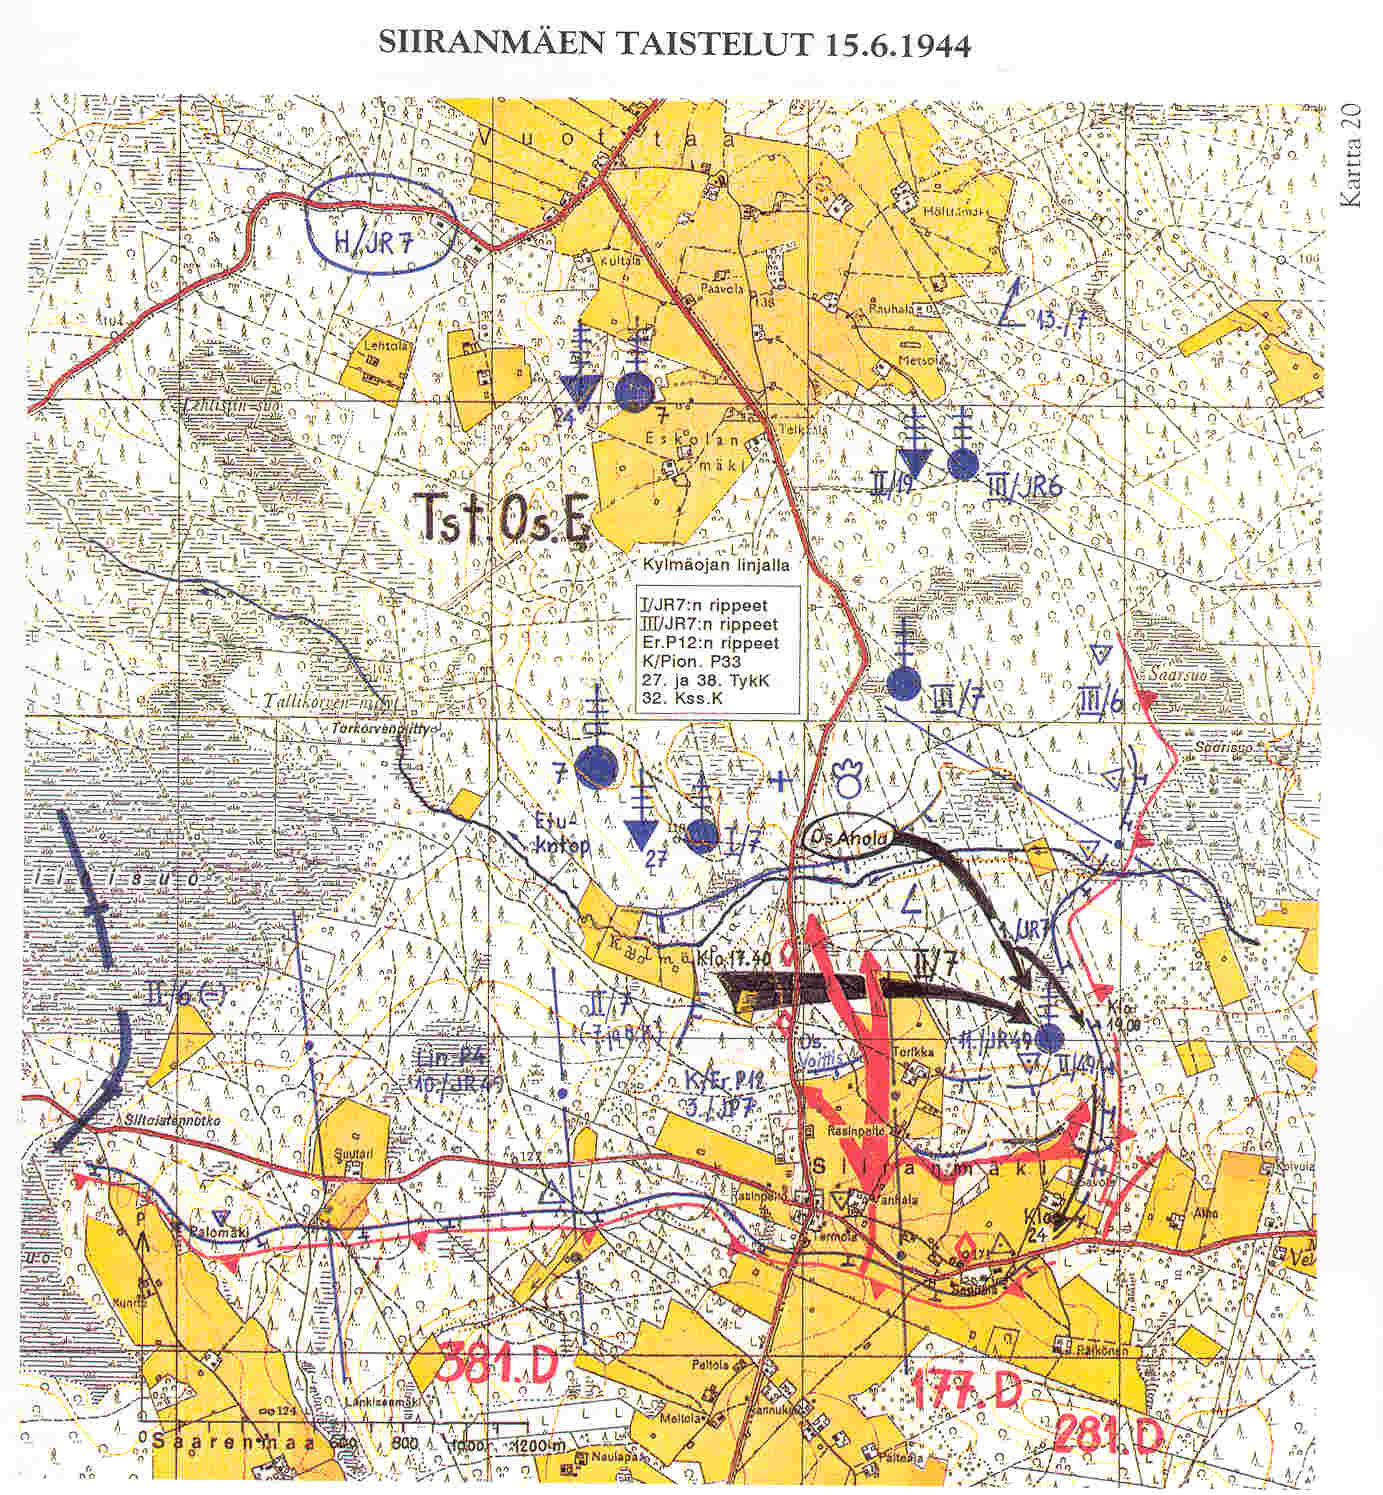 Siiranmäen taistelu 20.6.1944